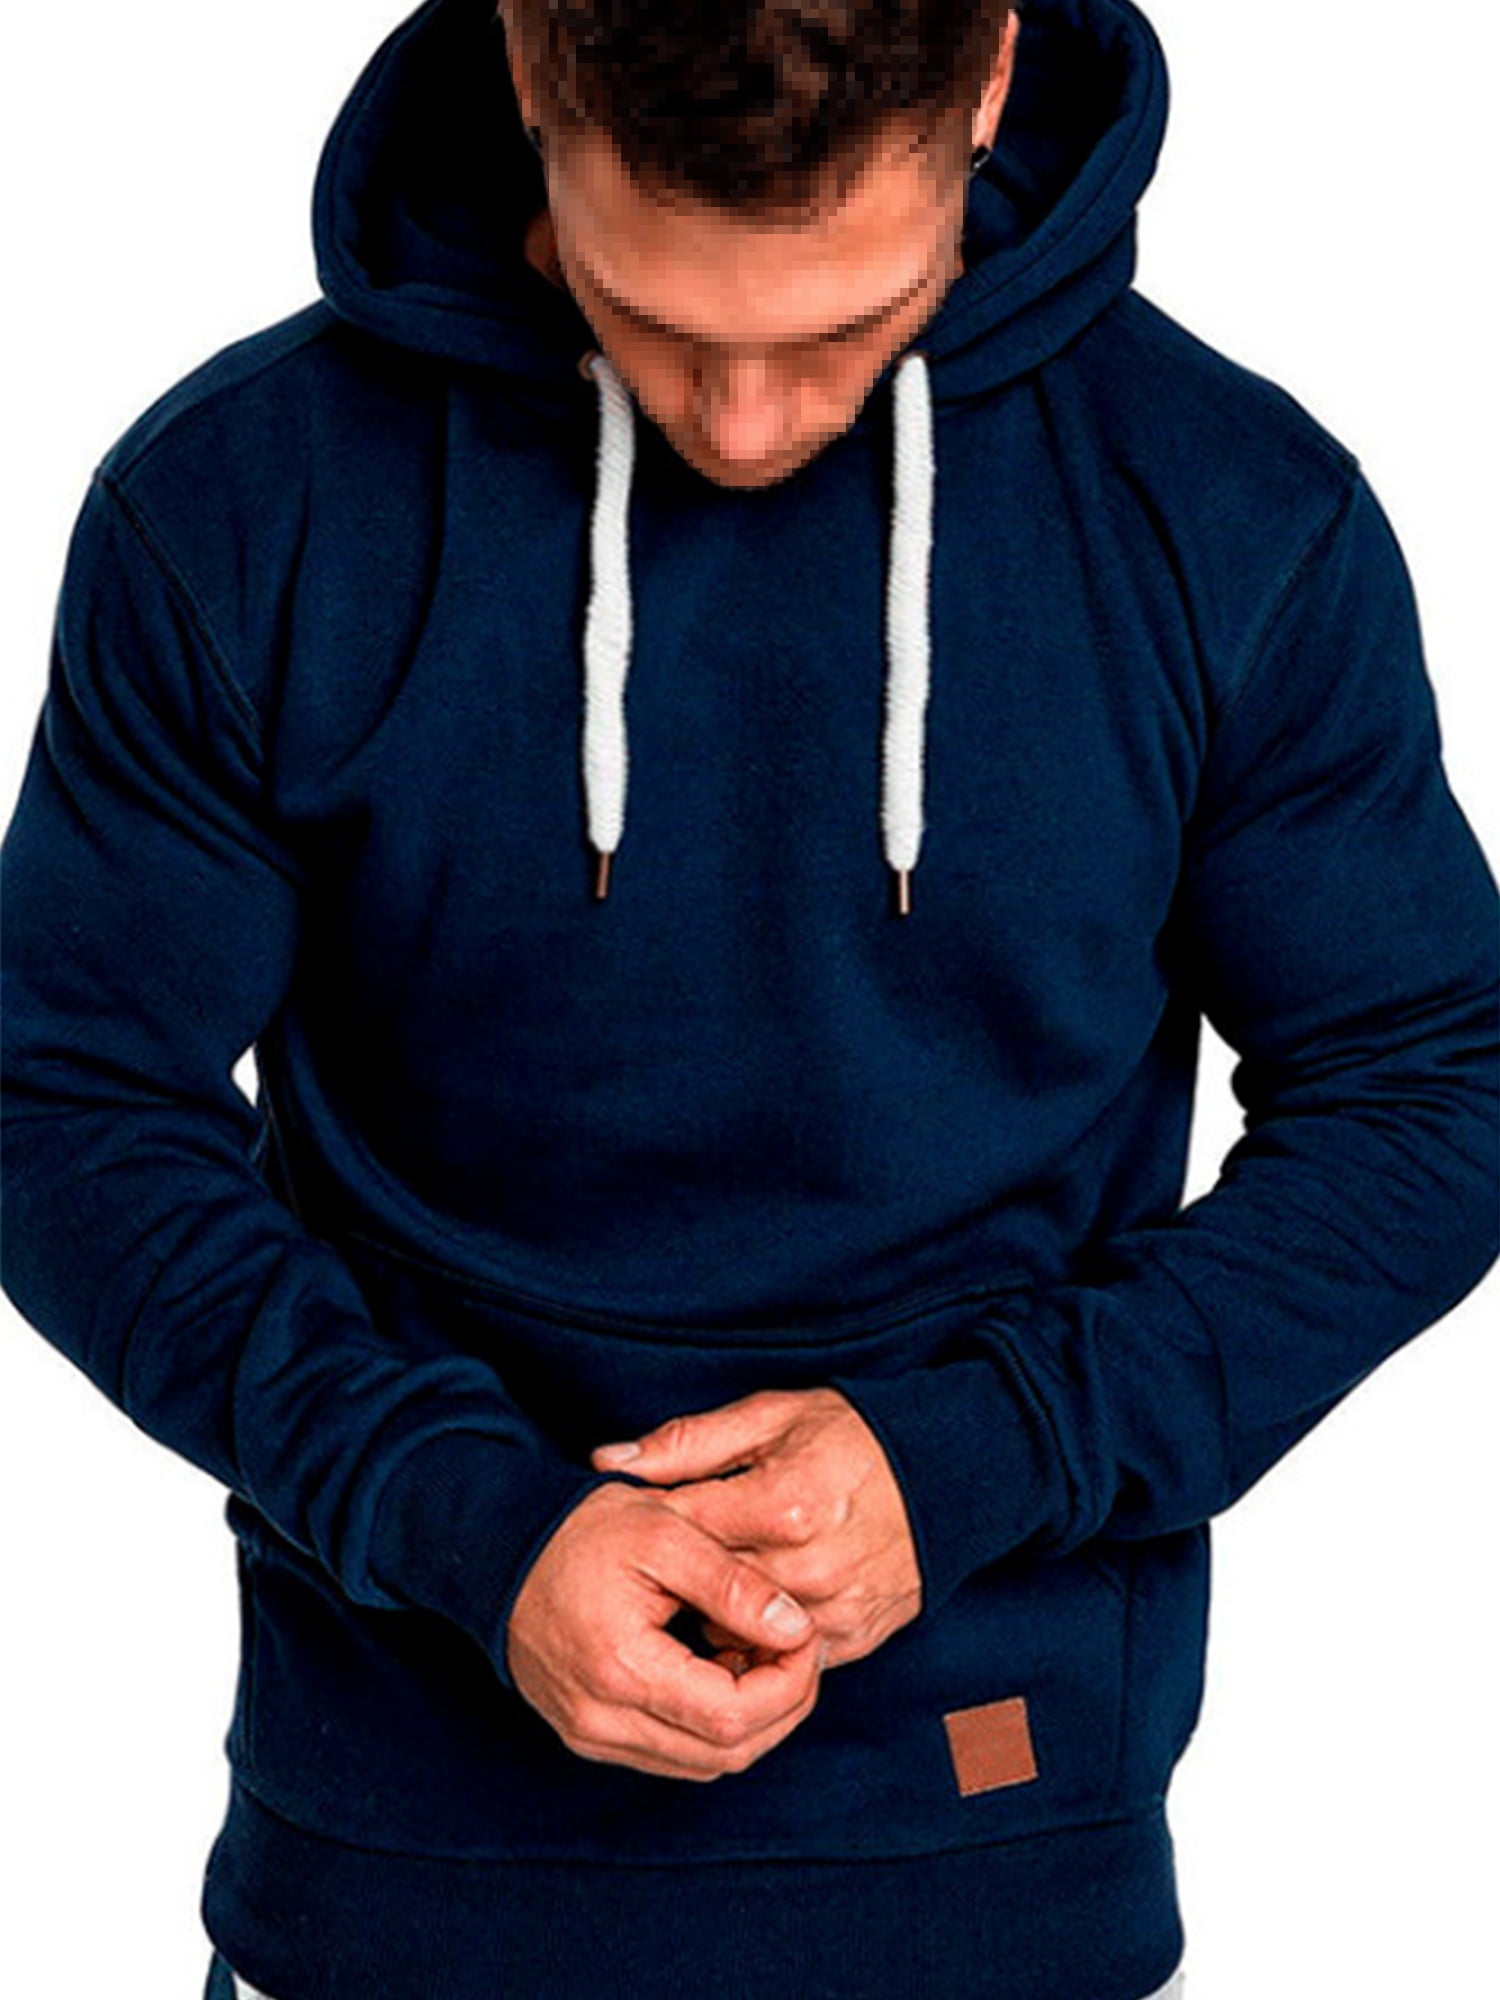 COOFANDY Men's Casual Hoodies Sweatshirts Lightweight Long Sleeves Athletic Pullovers 